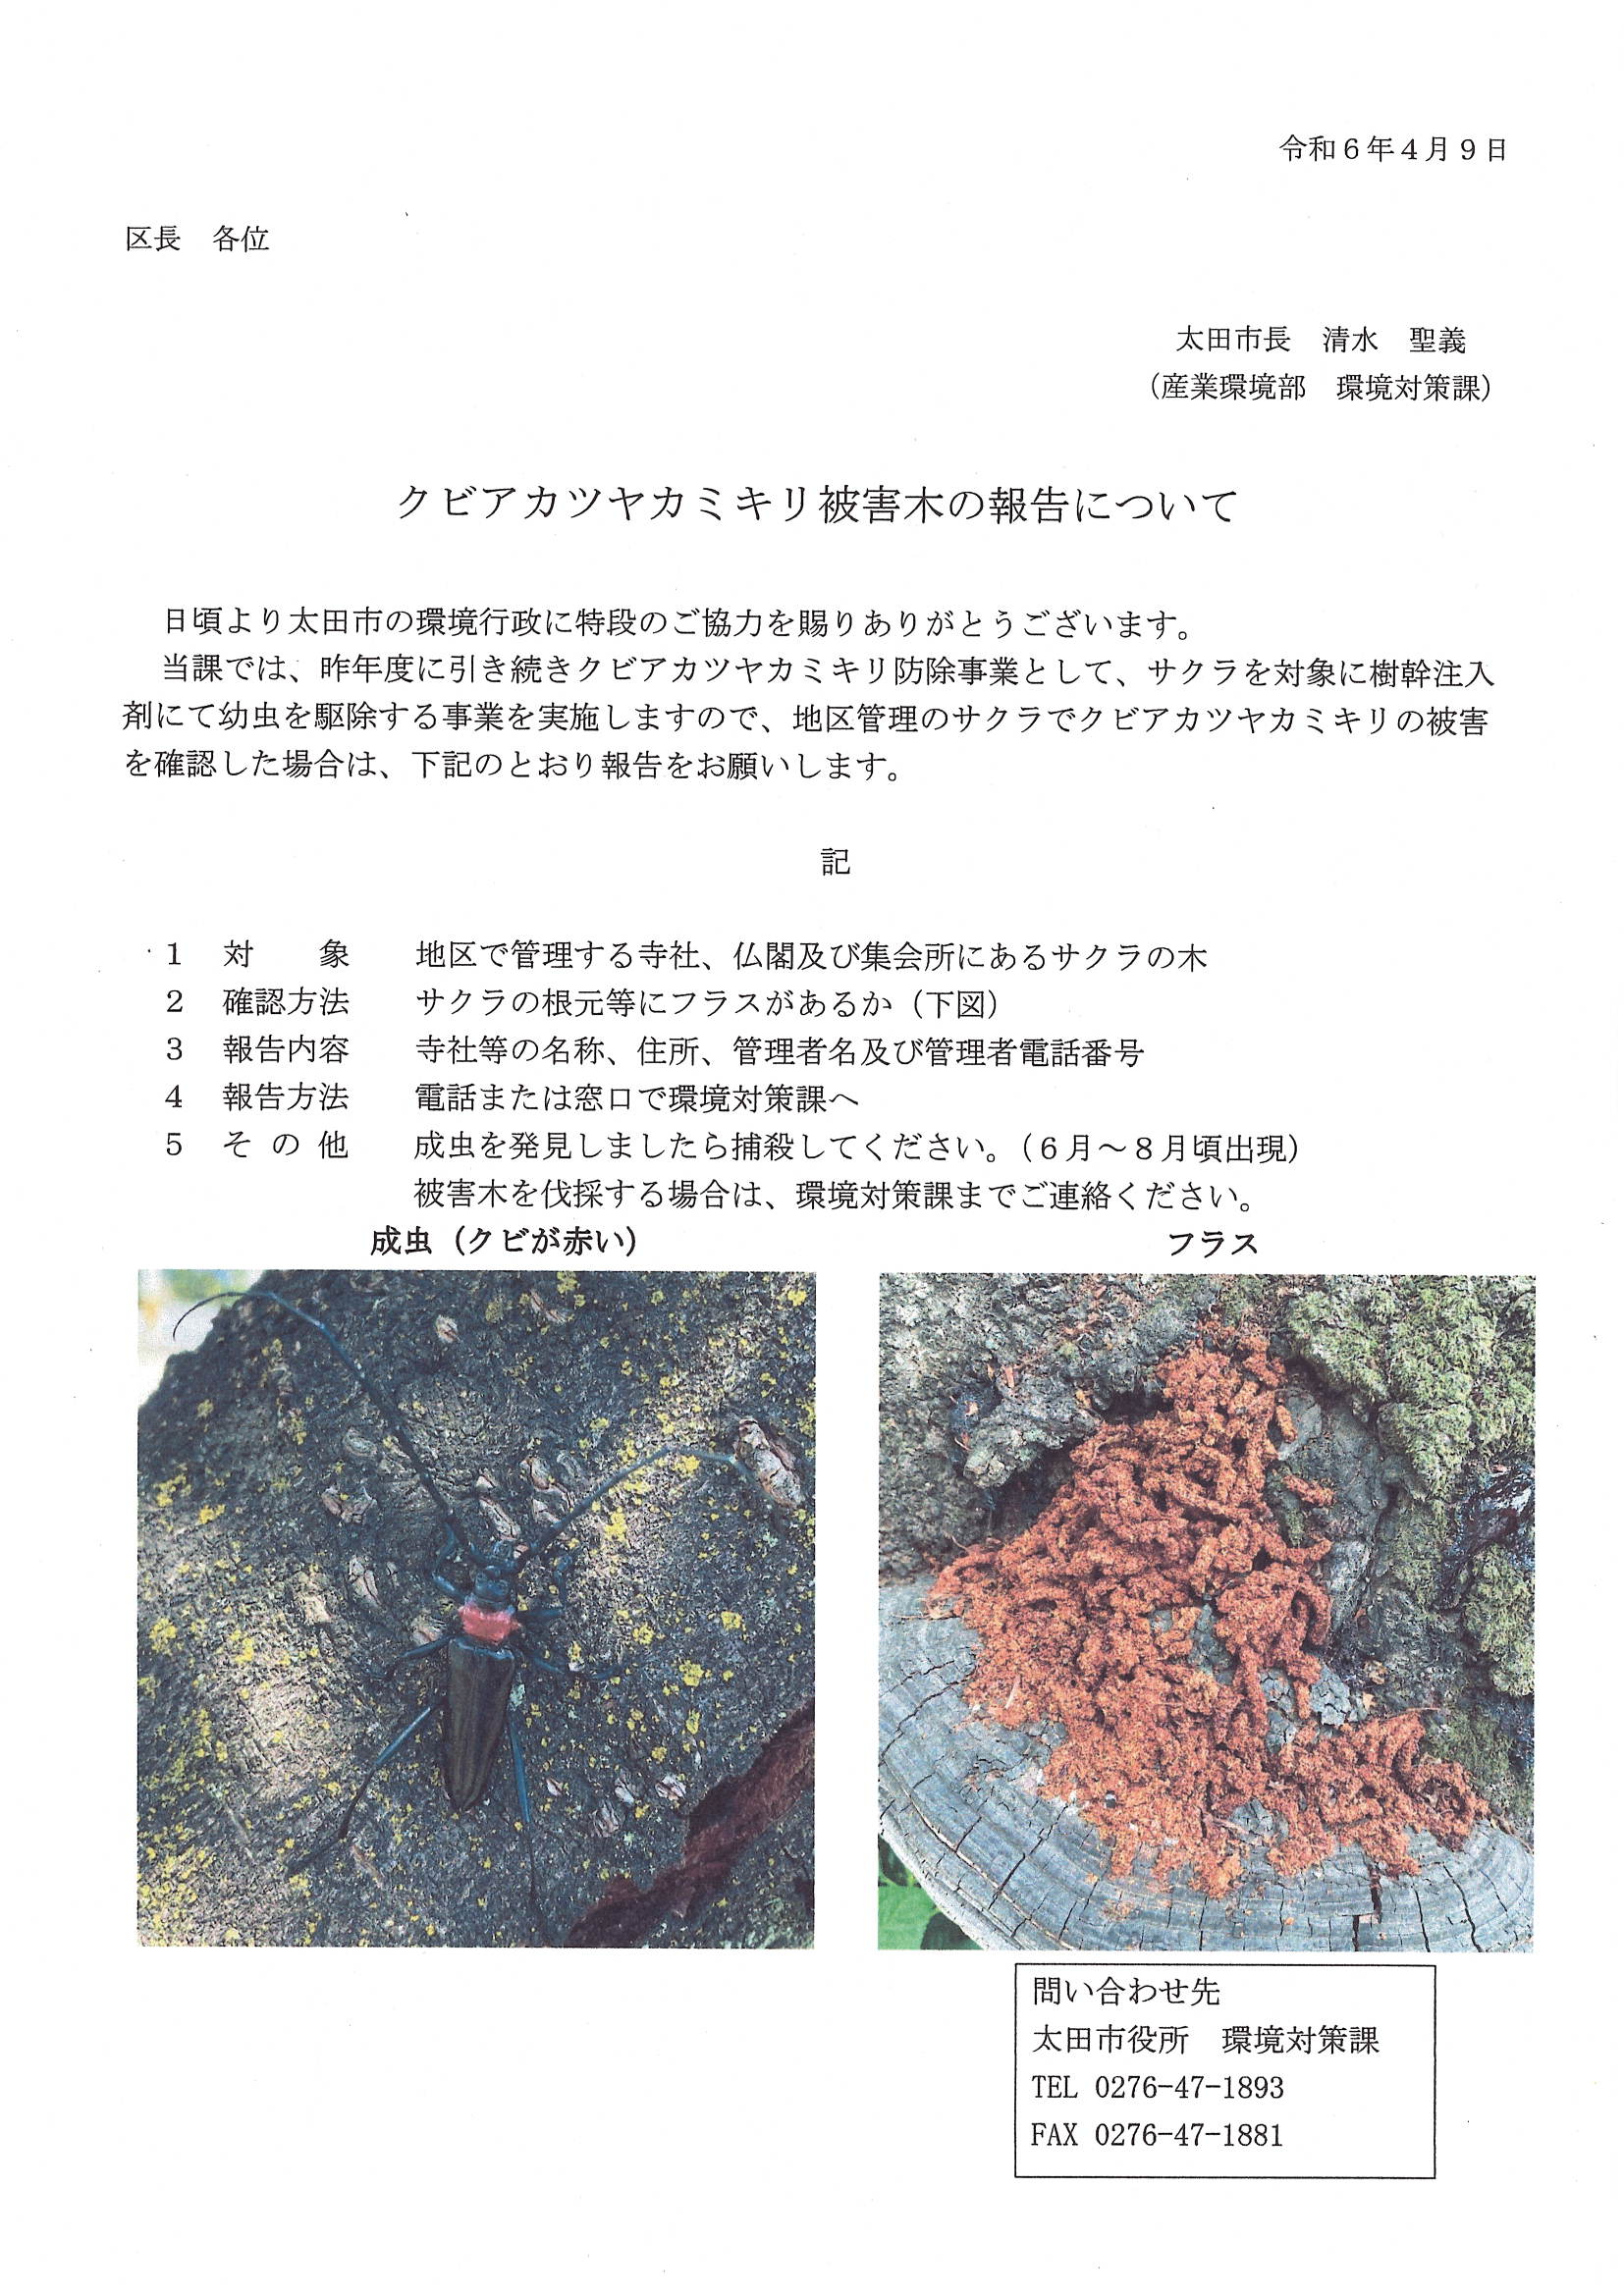 クビアカツヤカミキリ被害木の報告について.jpg